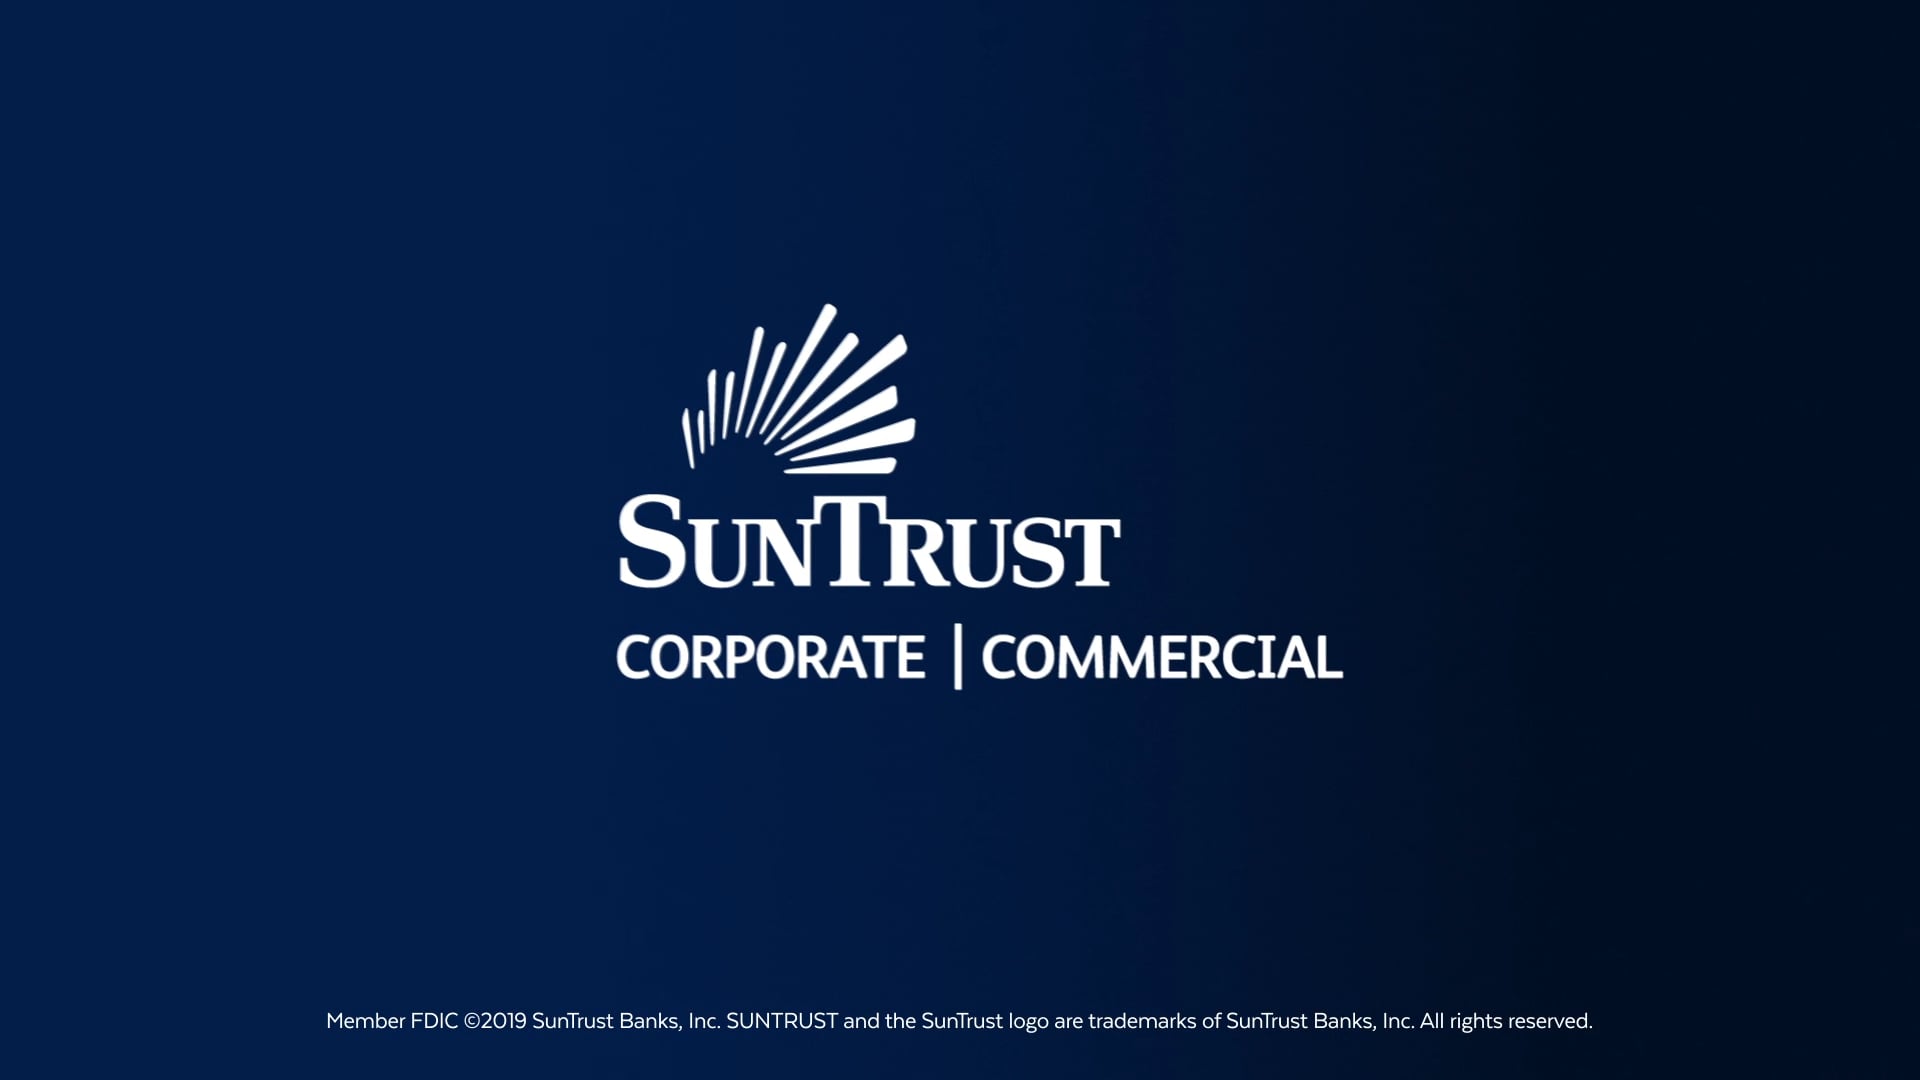 Suntrust - "Corporate Banking"